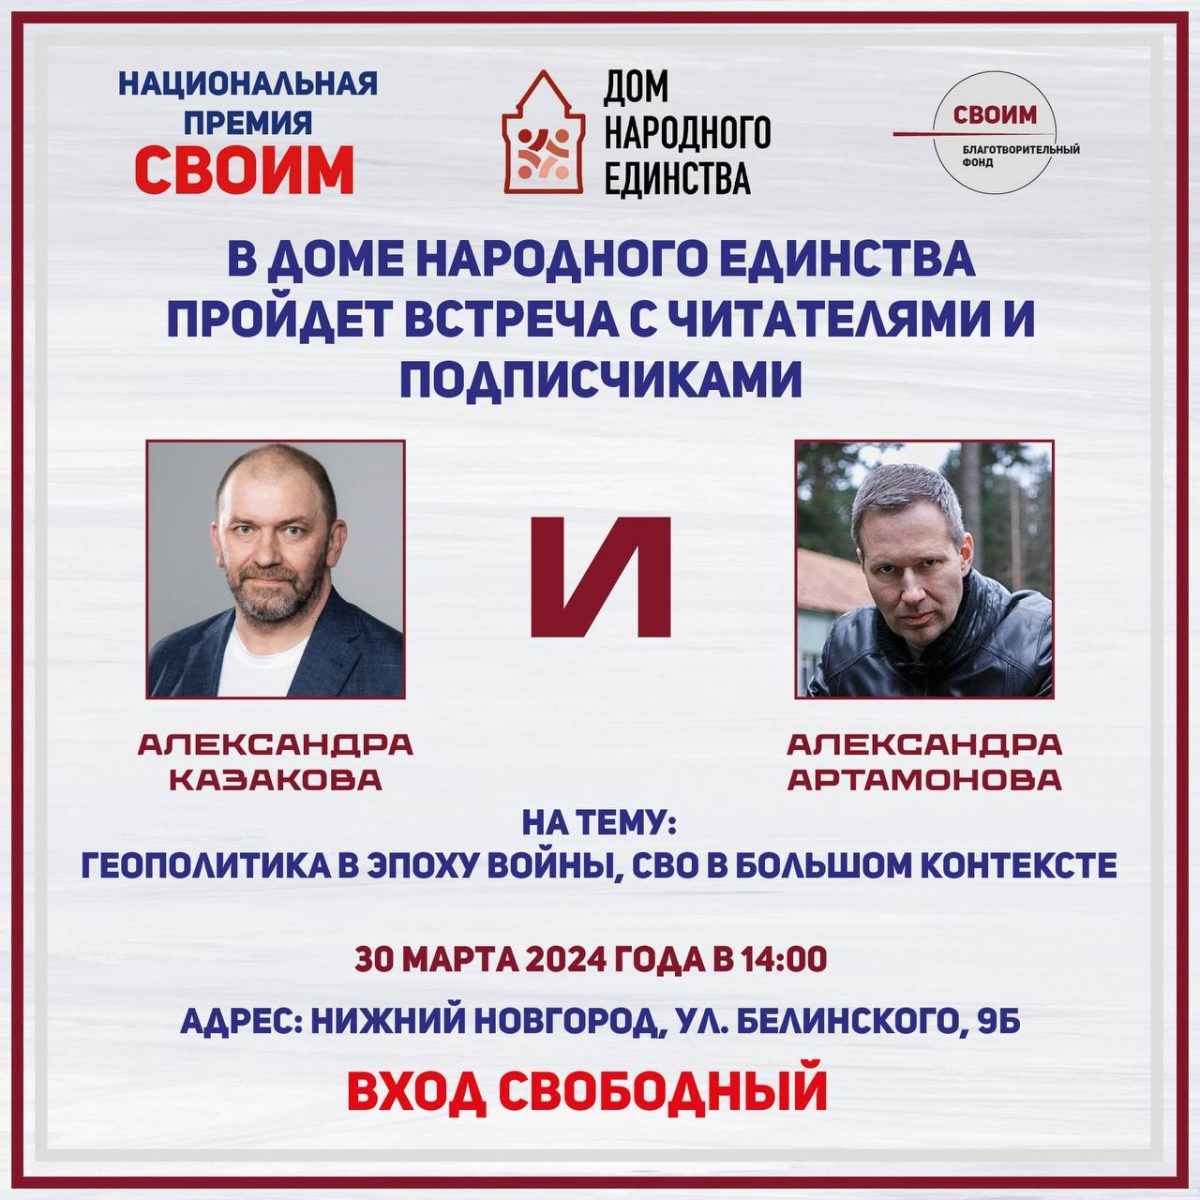 Военный эксперт Артамонов и политолог Казаков встретятся с нижегородцами